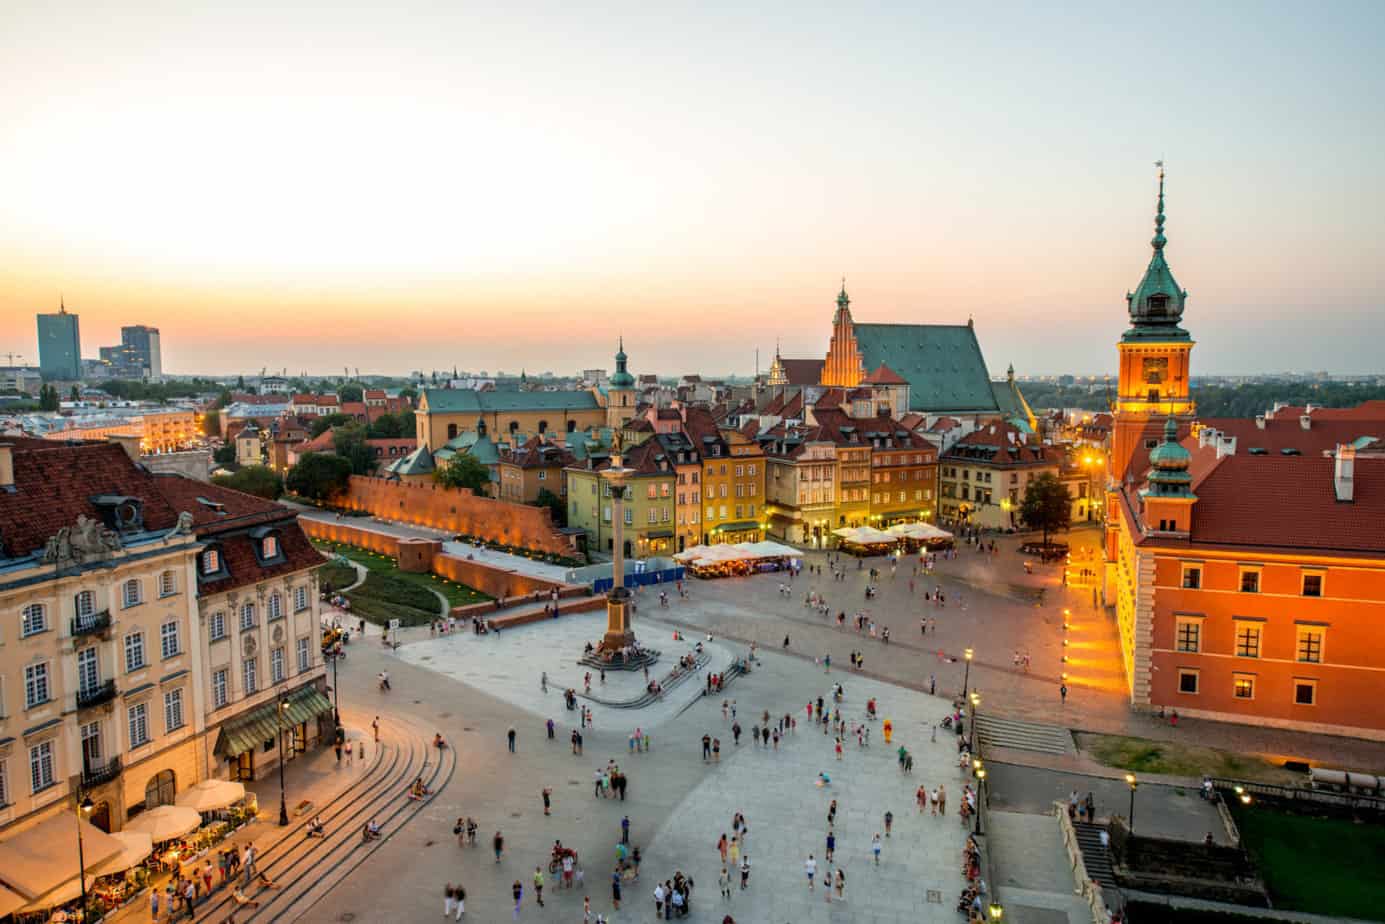 Warschau oude stad